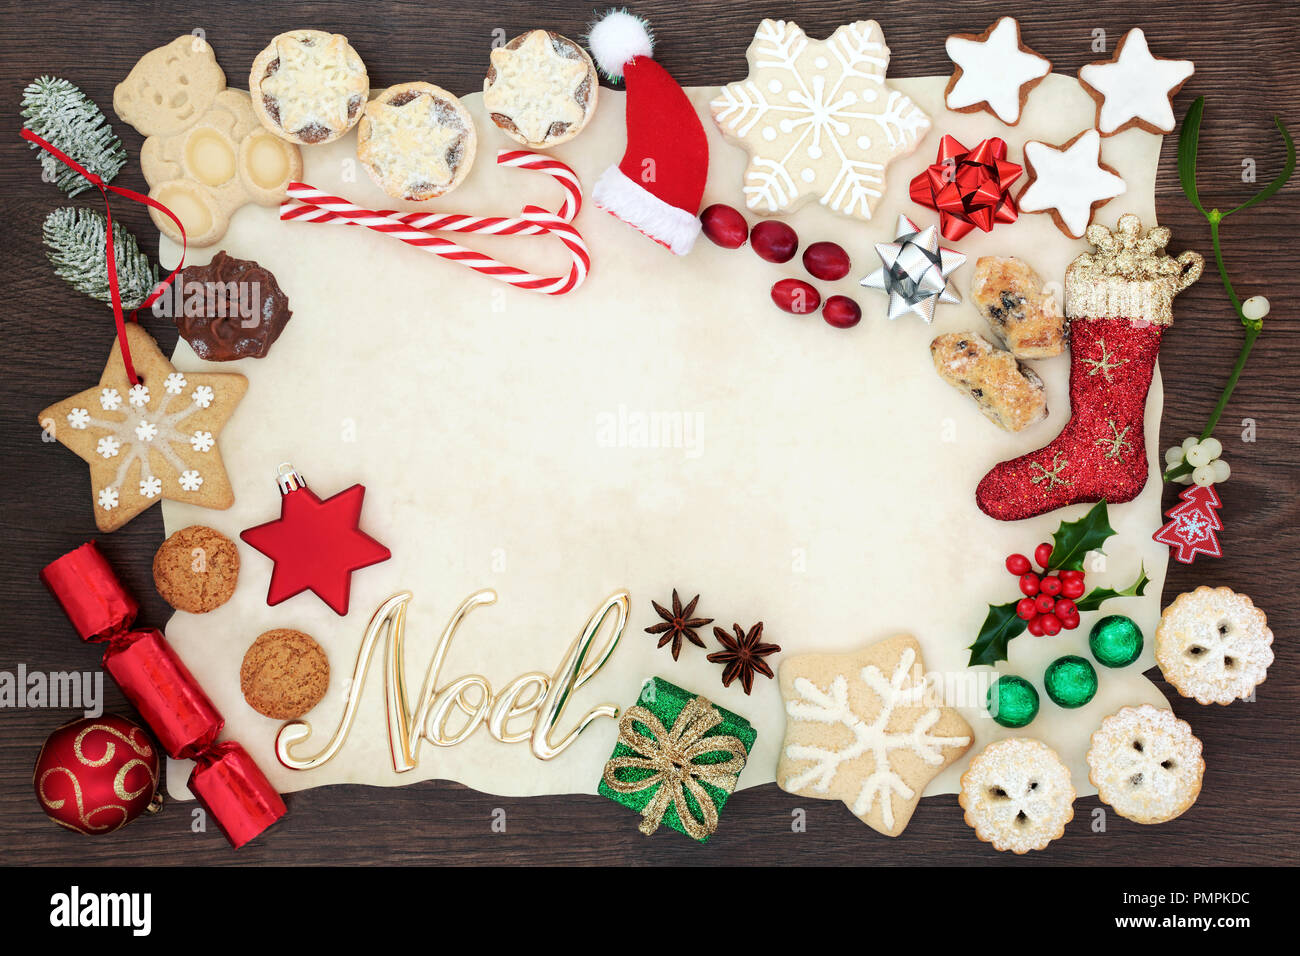 Natale e Noel del bordo dello sfondo compresi addobbi per l'albero, biscotti, torte, frutta, cioccolatini e flora invernale su carta pergamena sul rovere rustico. Foto Stock